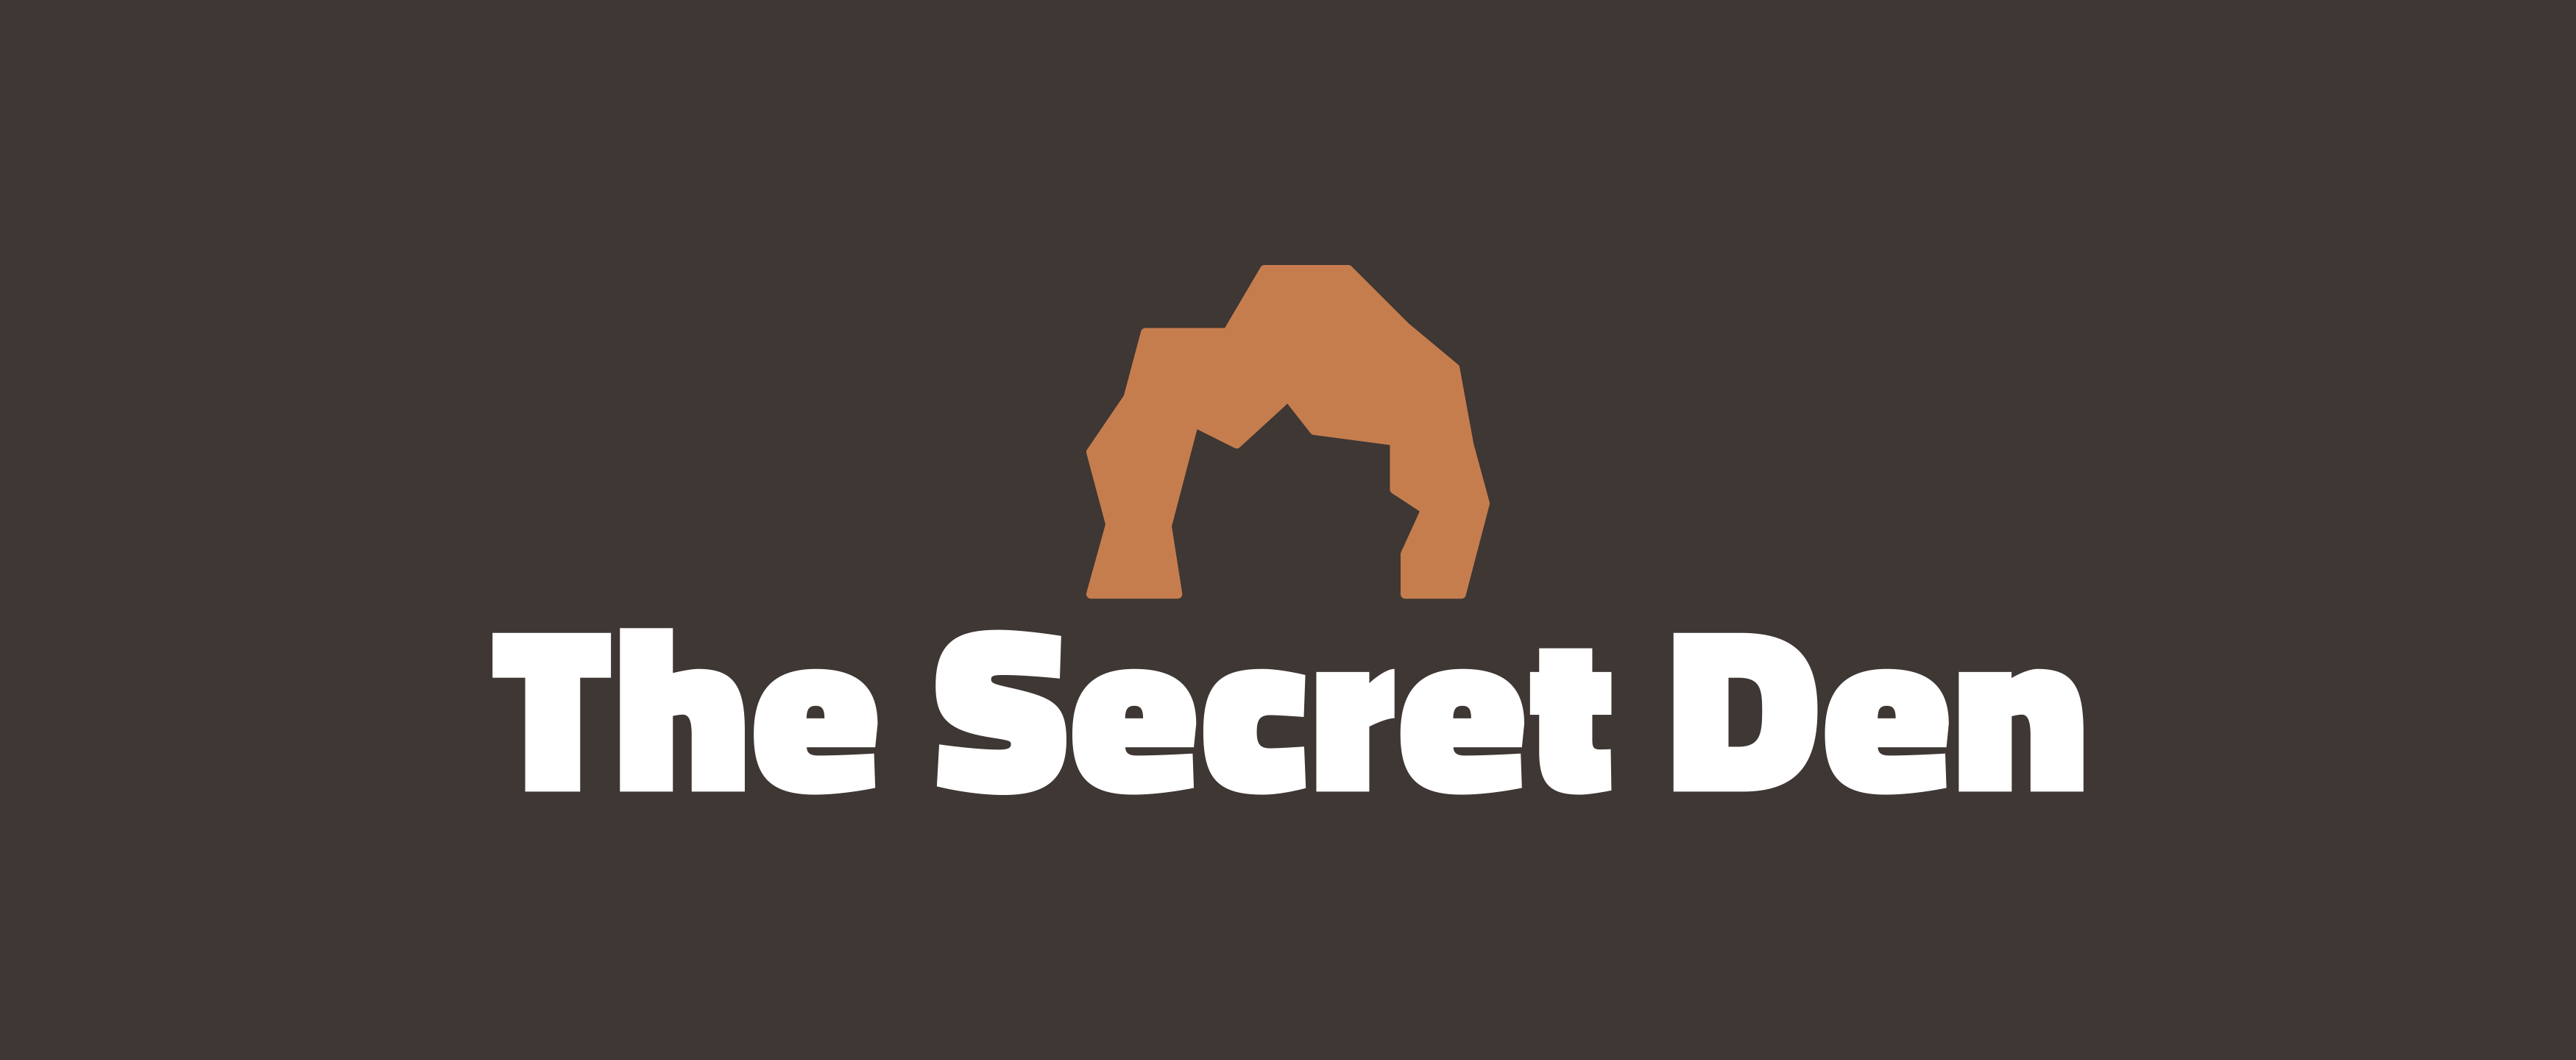 Banner for The Secret Denn server